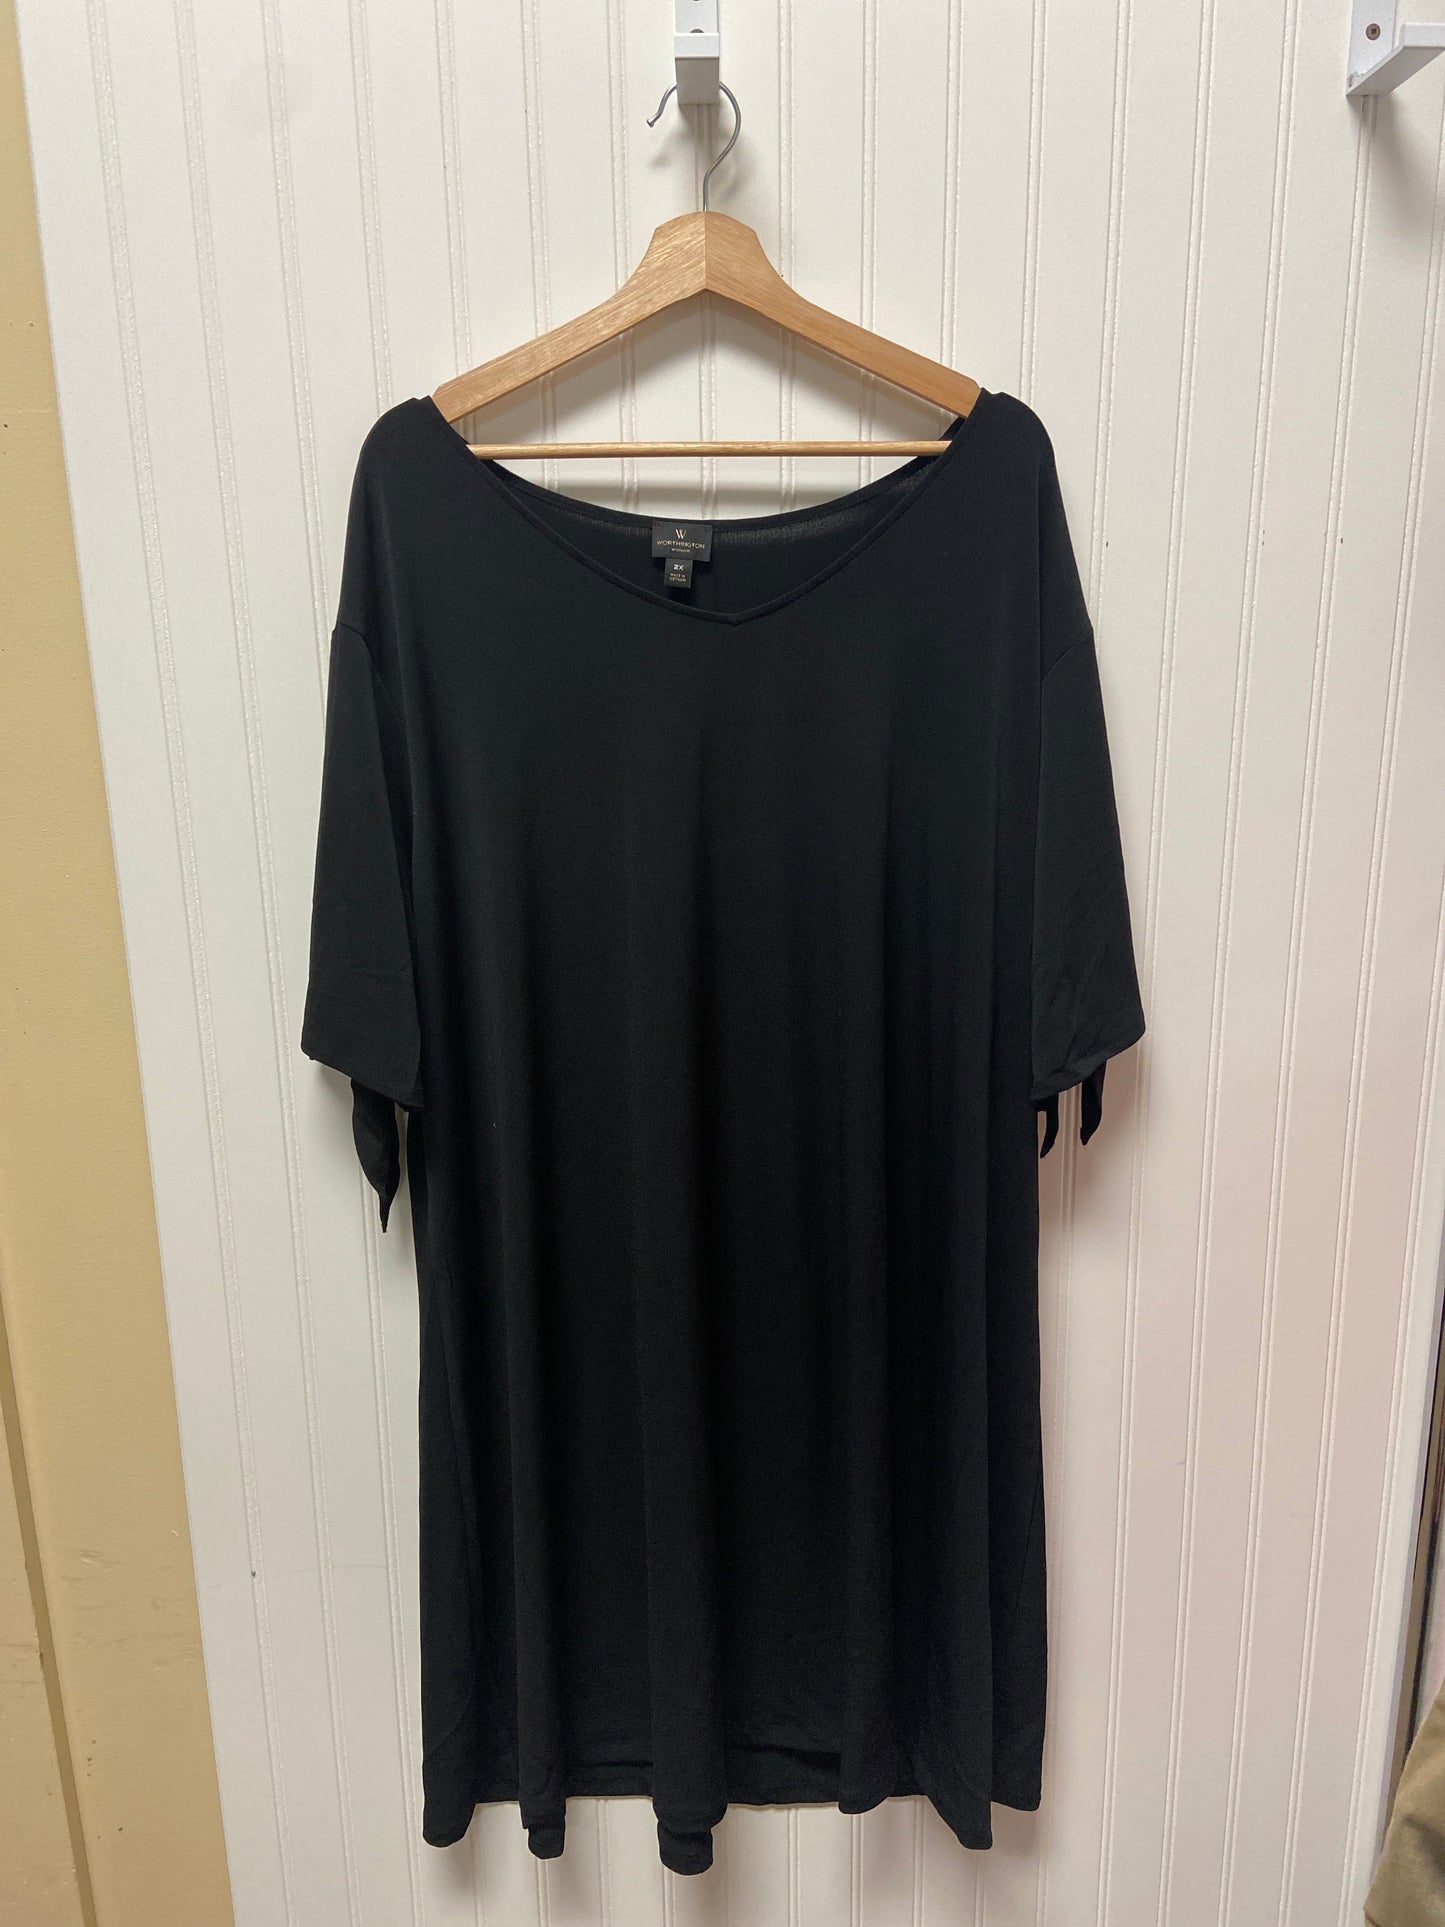 Black Dress Casual Short Worthington, Size 2x